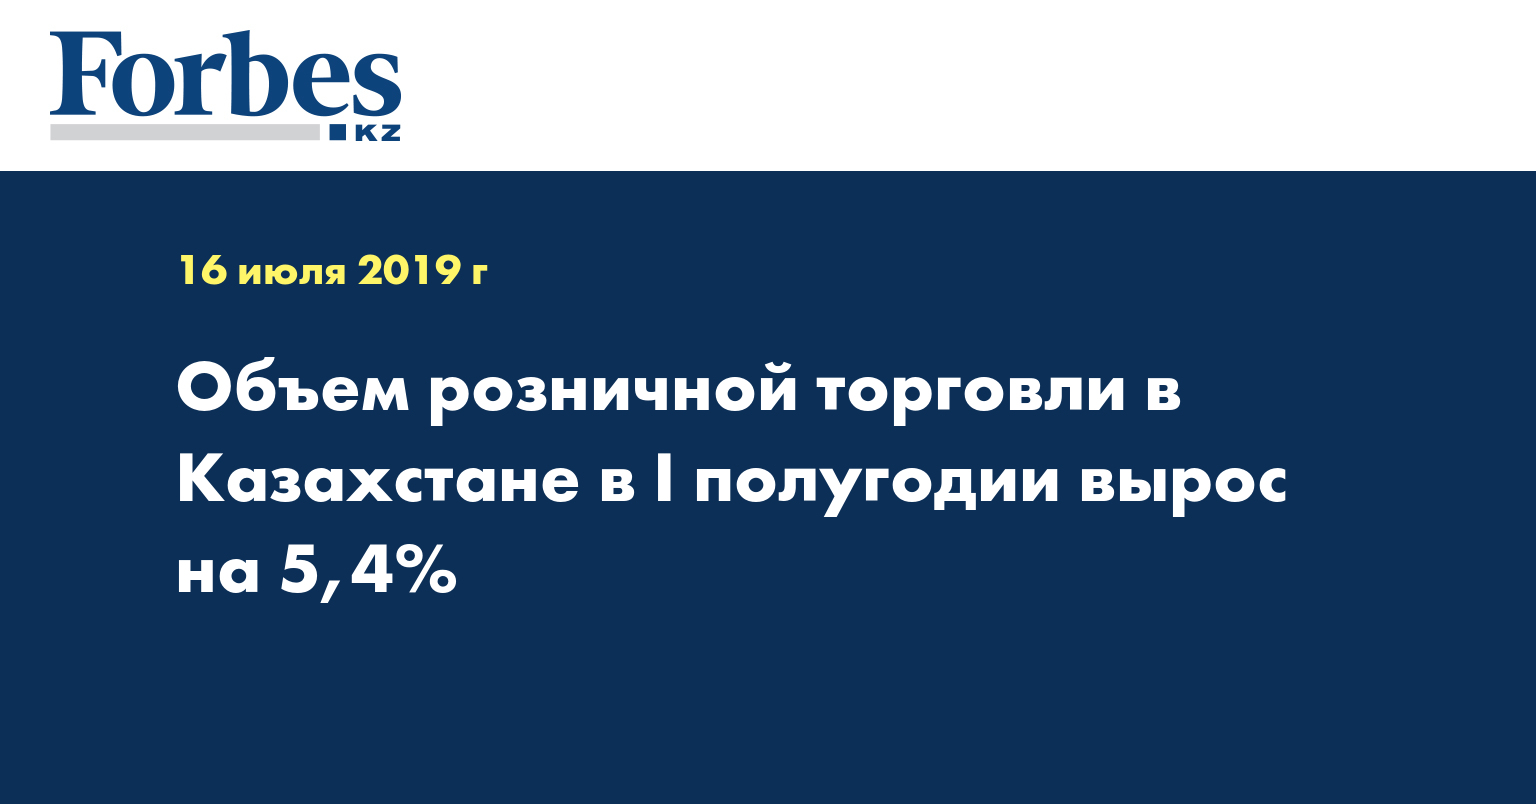 Объем розничной торговли в Казахстане в I полугодии вырос на 5,4%